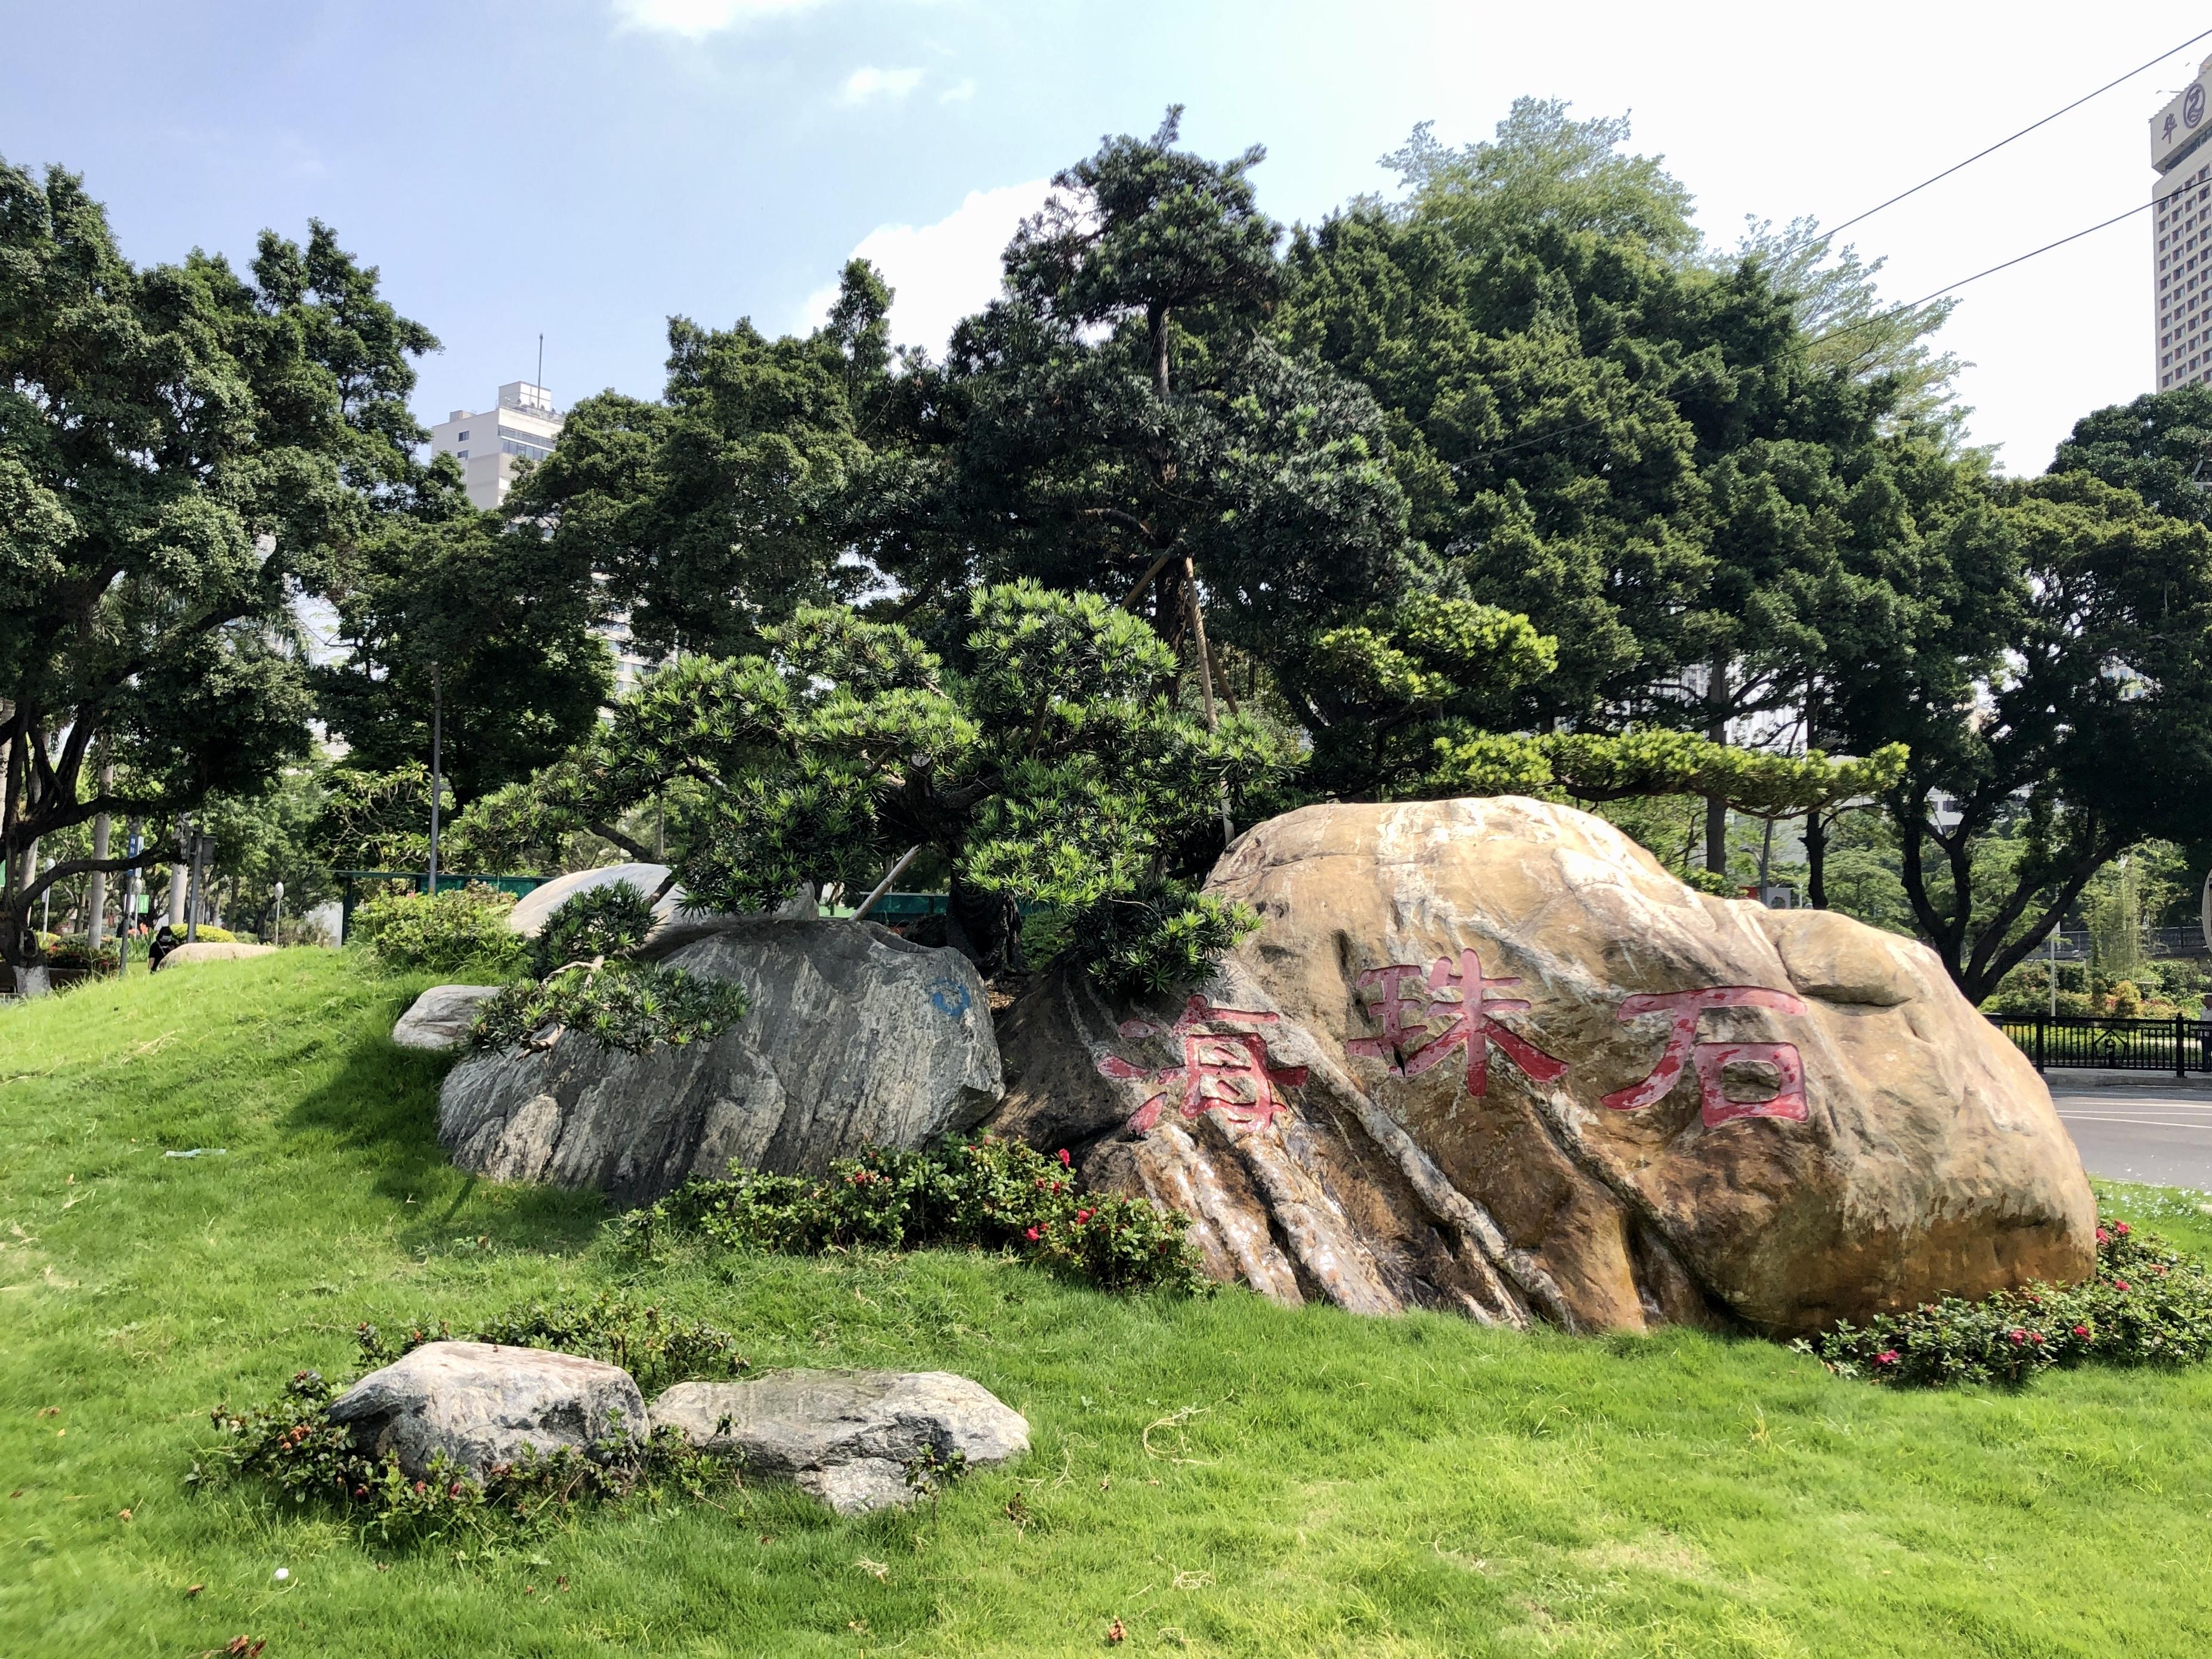 海珠石指古时广州珠江中的一块巨型的白垩纪礁石,又名海珠石.